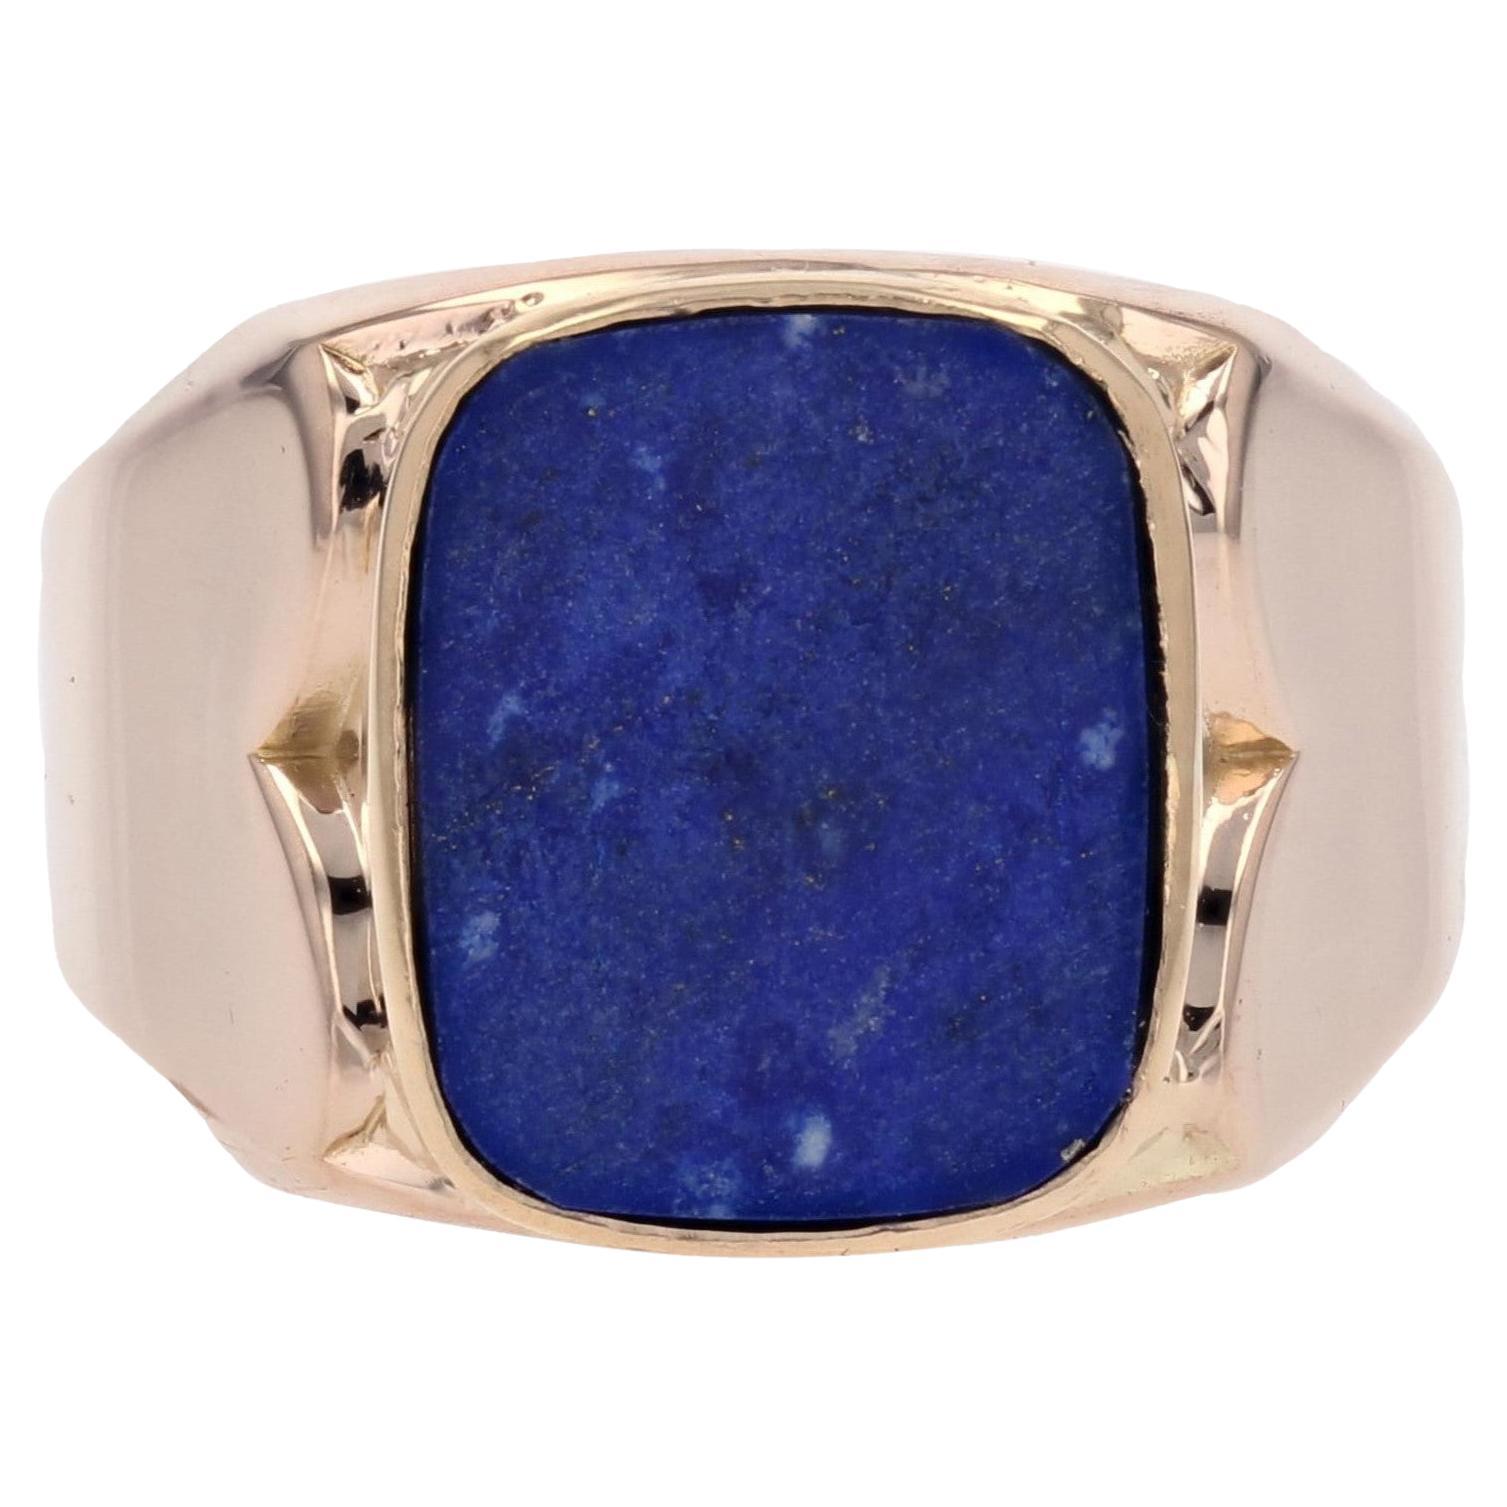 French Retro 1950s Lapis Lazuli 18 Karat Yellow Gold Signet Ring